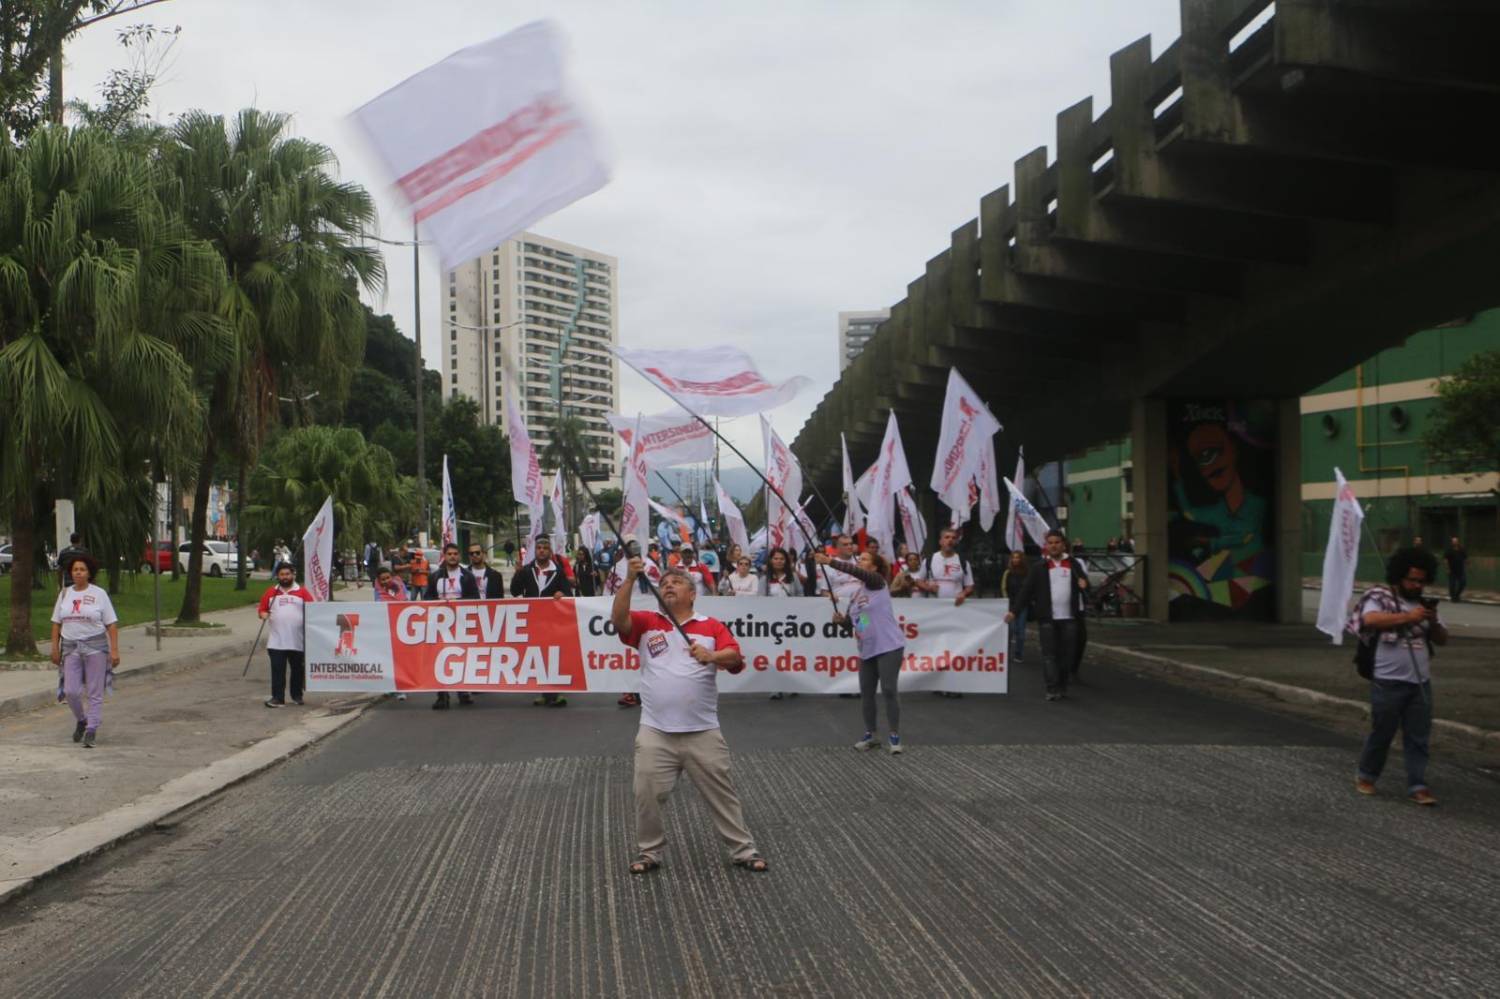 Caixa em Santos é condenada a reembolsar desconto da Greve Geral